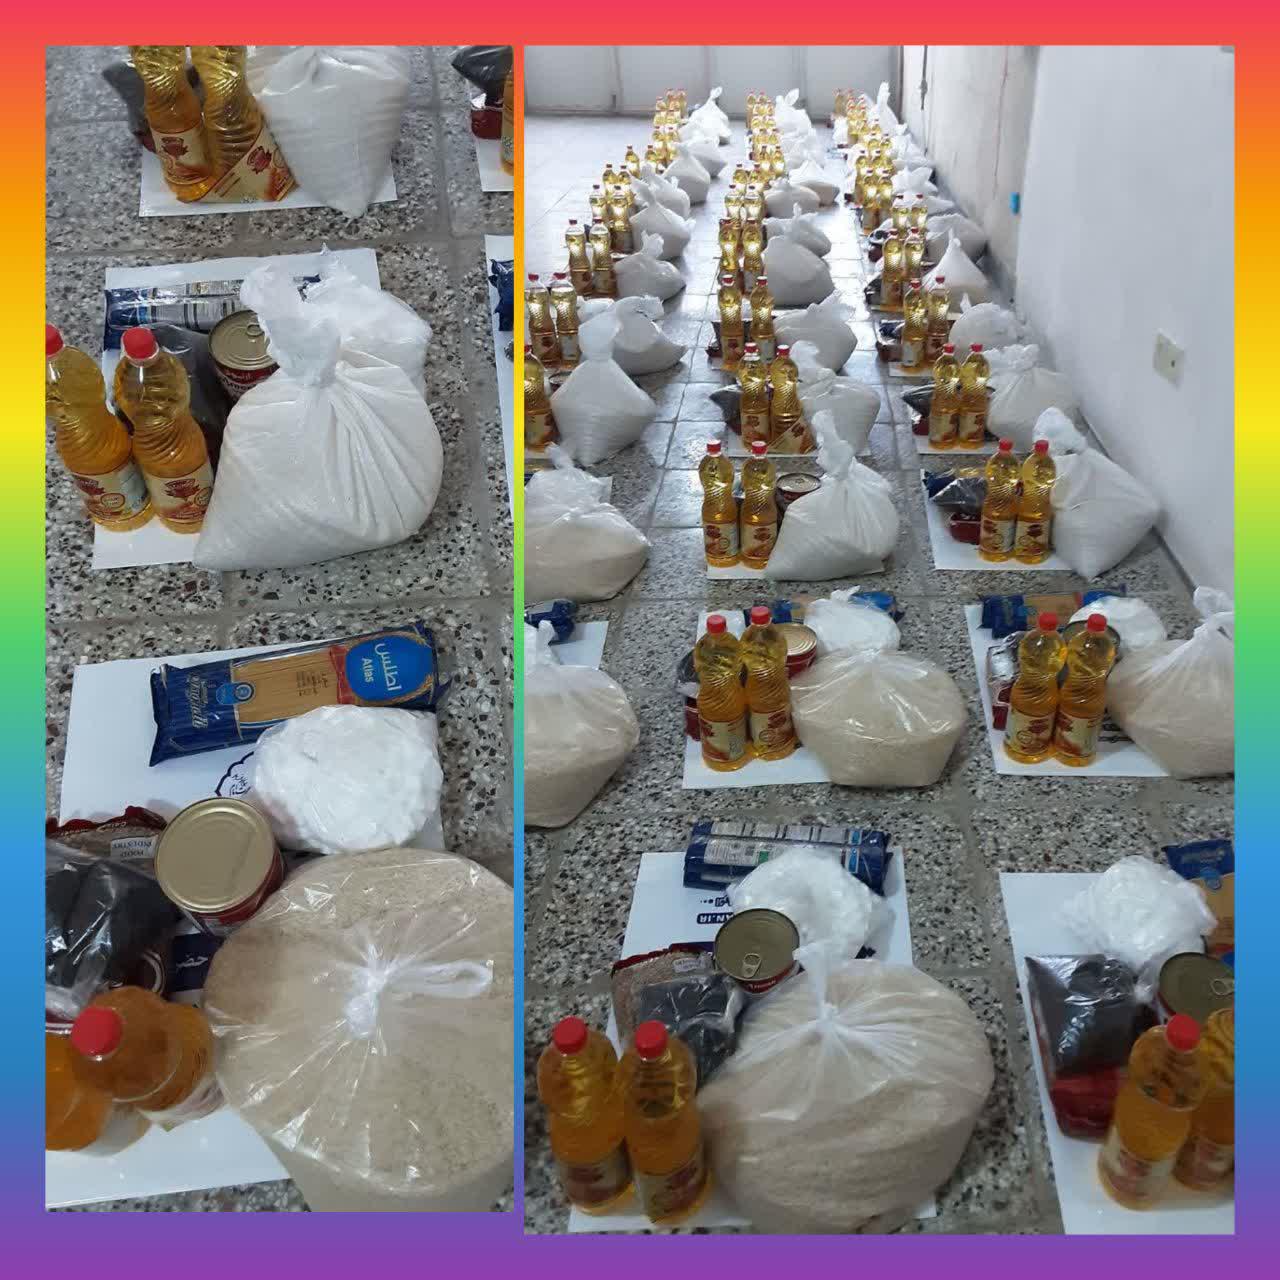 تهیه و توزیع ۱۰۰ بسته معیشتی توسط خواهران بسیجی در شاهرود